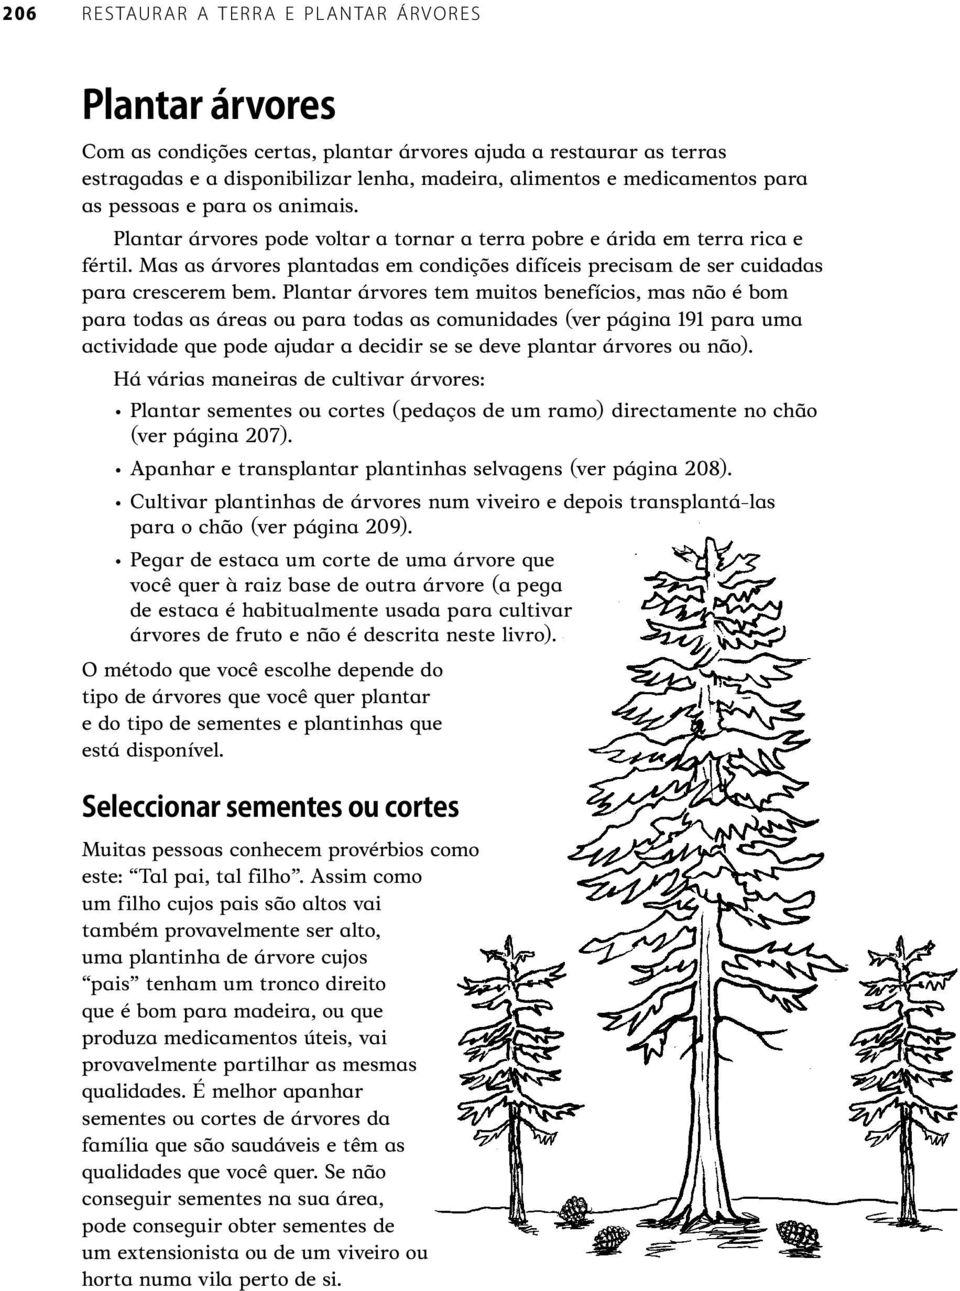 Plantar árvores tem muitos benefícios, mas não é bom para todas as áreas ou para todas as comunidades (ver página 191 para uma actividade que pode ajudar a decidir se se deve plantar árvores ou não).